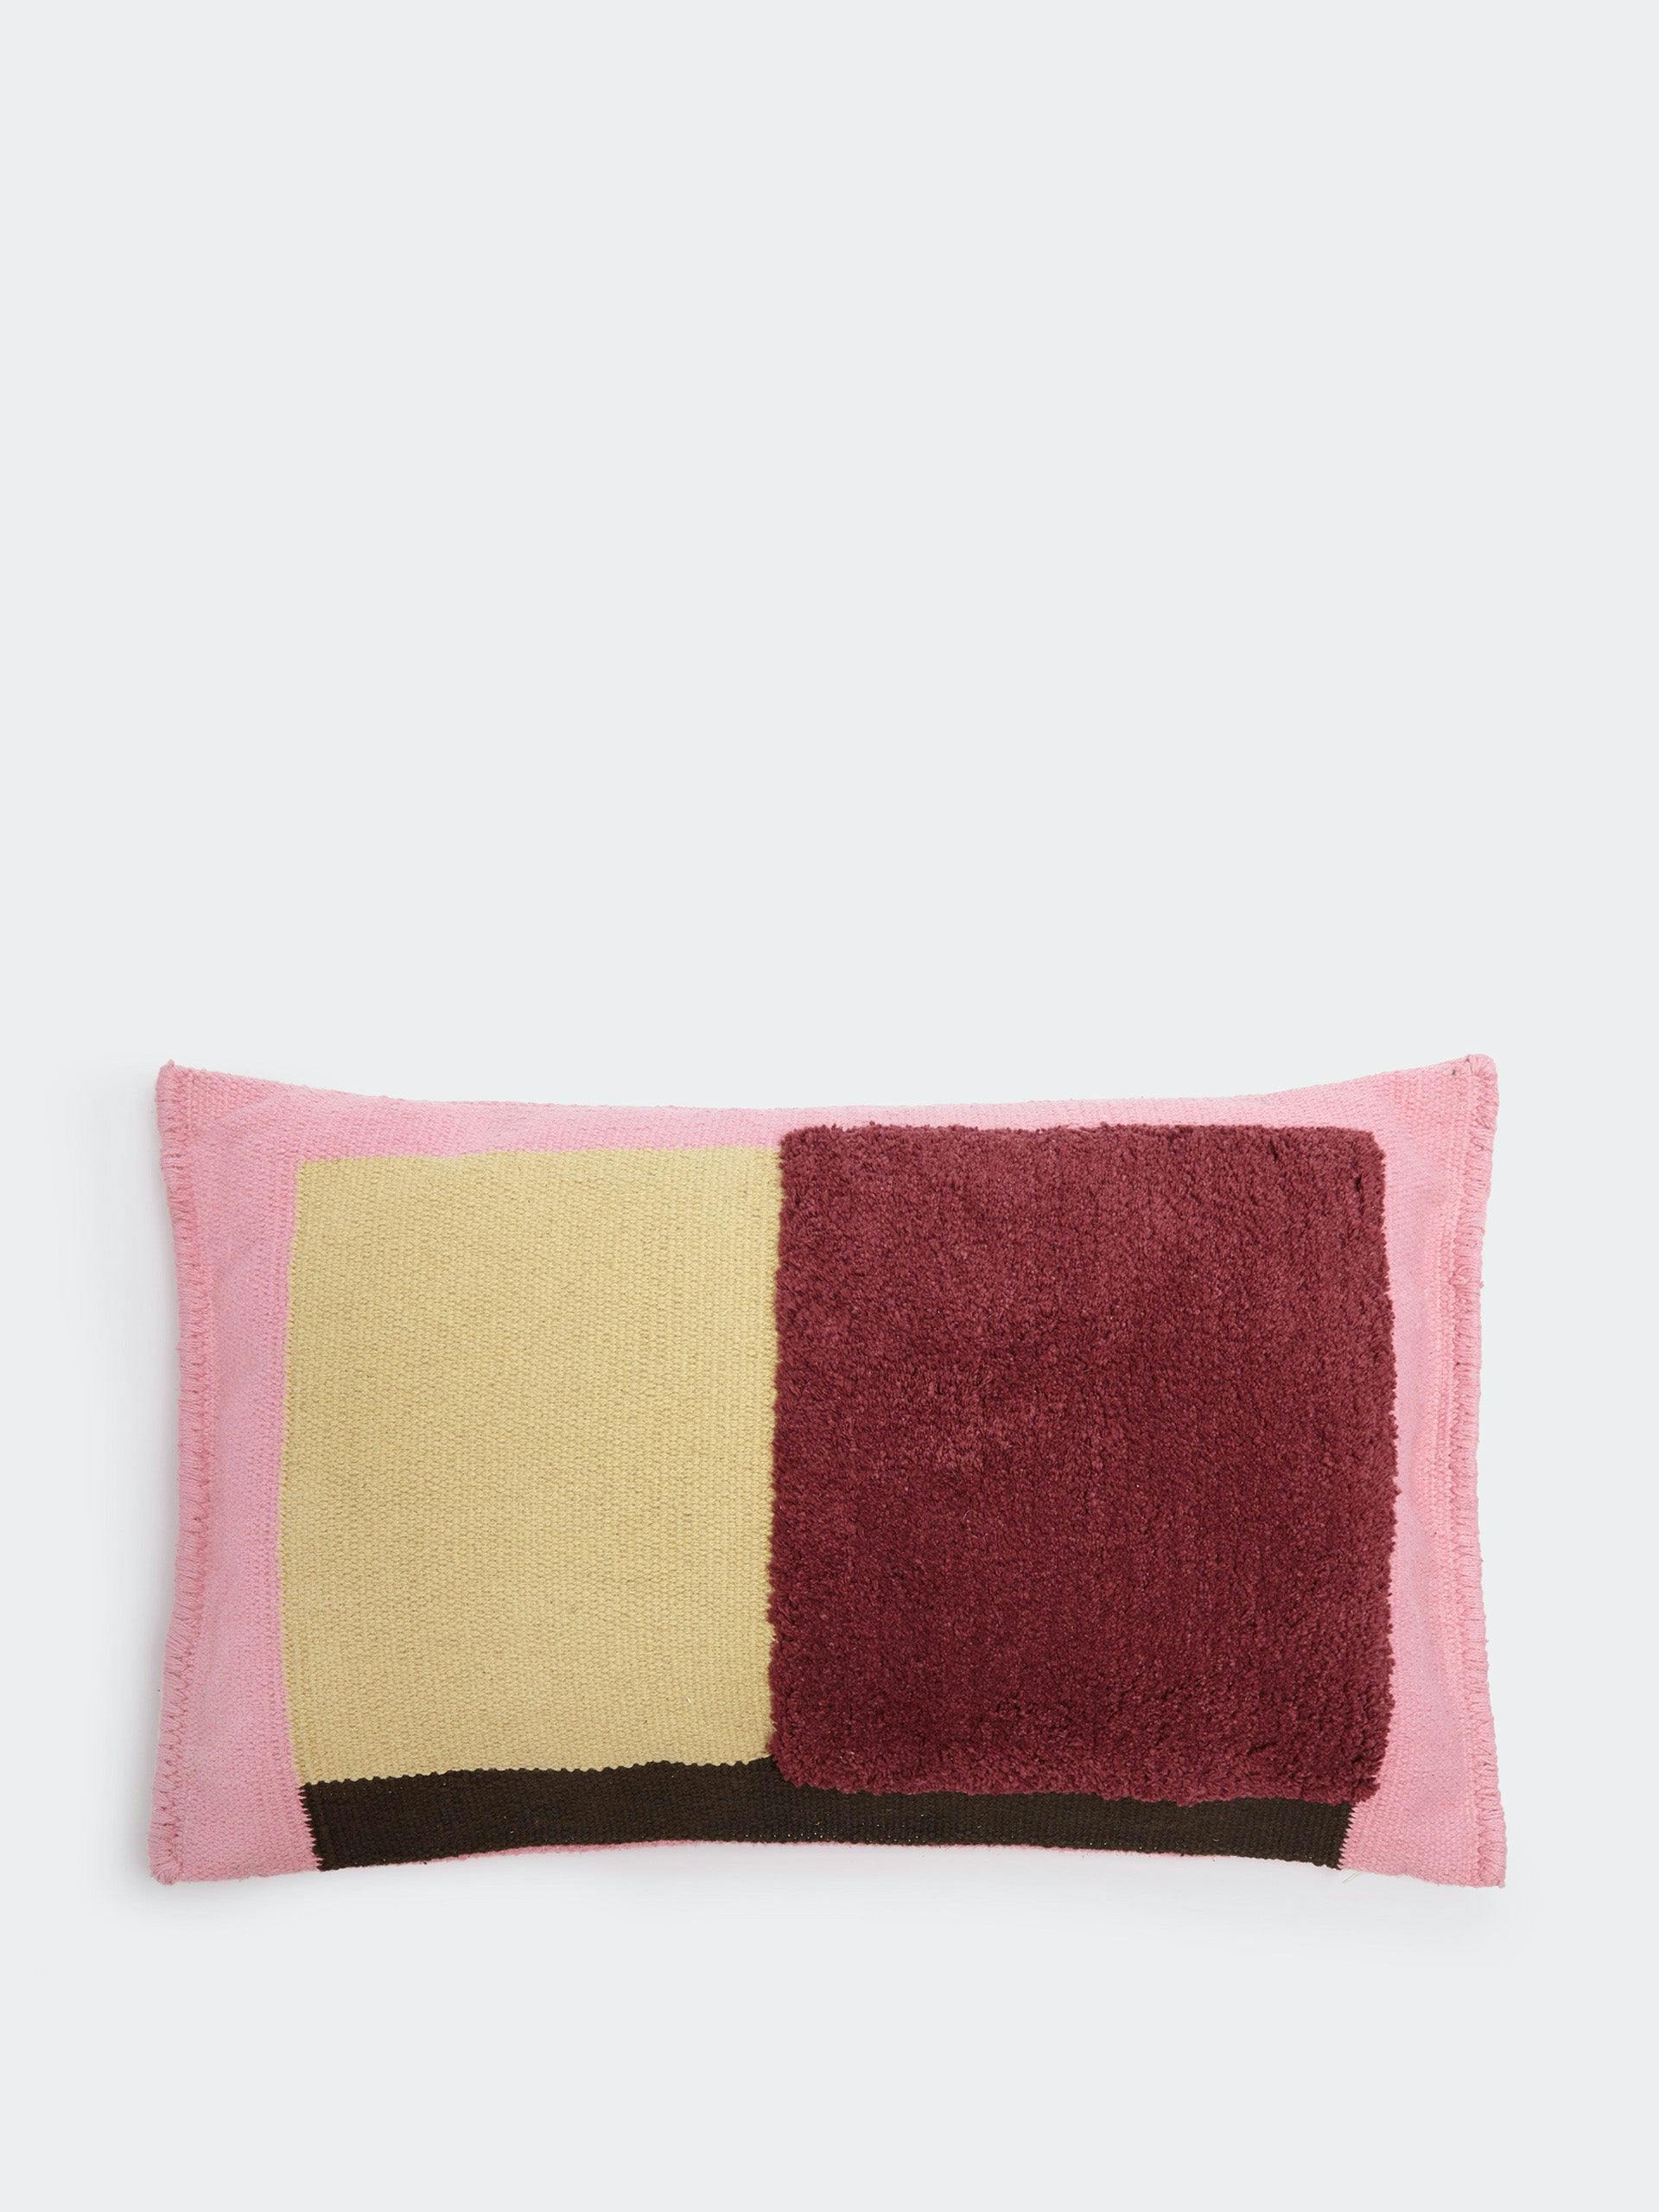 Bauhaus cushion